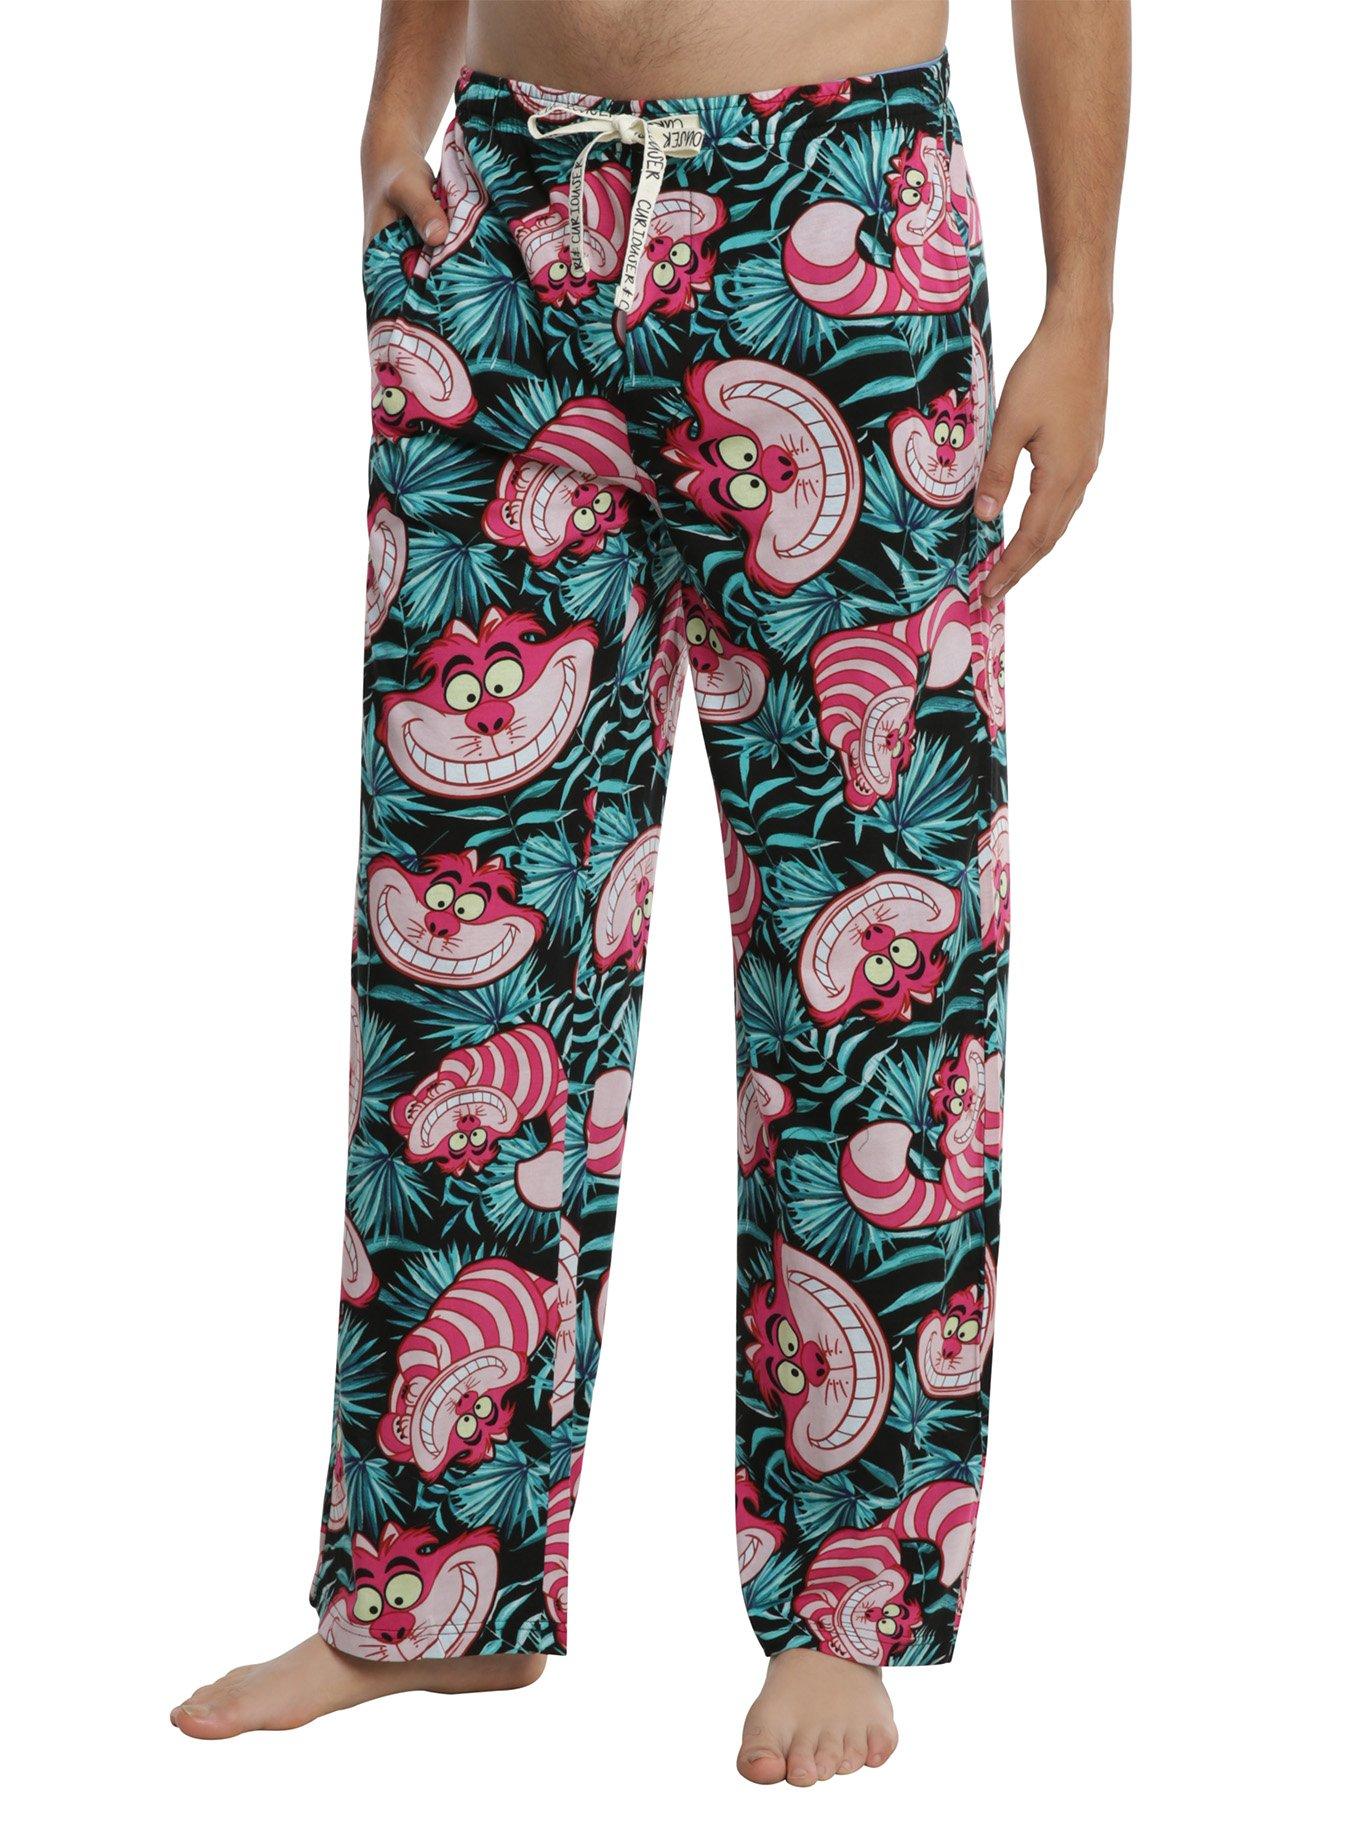 Disney Alice In Wonderland Cheshire Cat Tropical Print Guys Pajama Pants, MULTI, hi-res